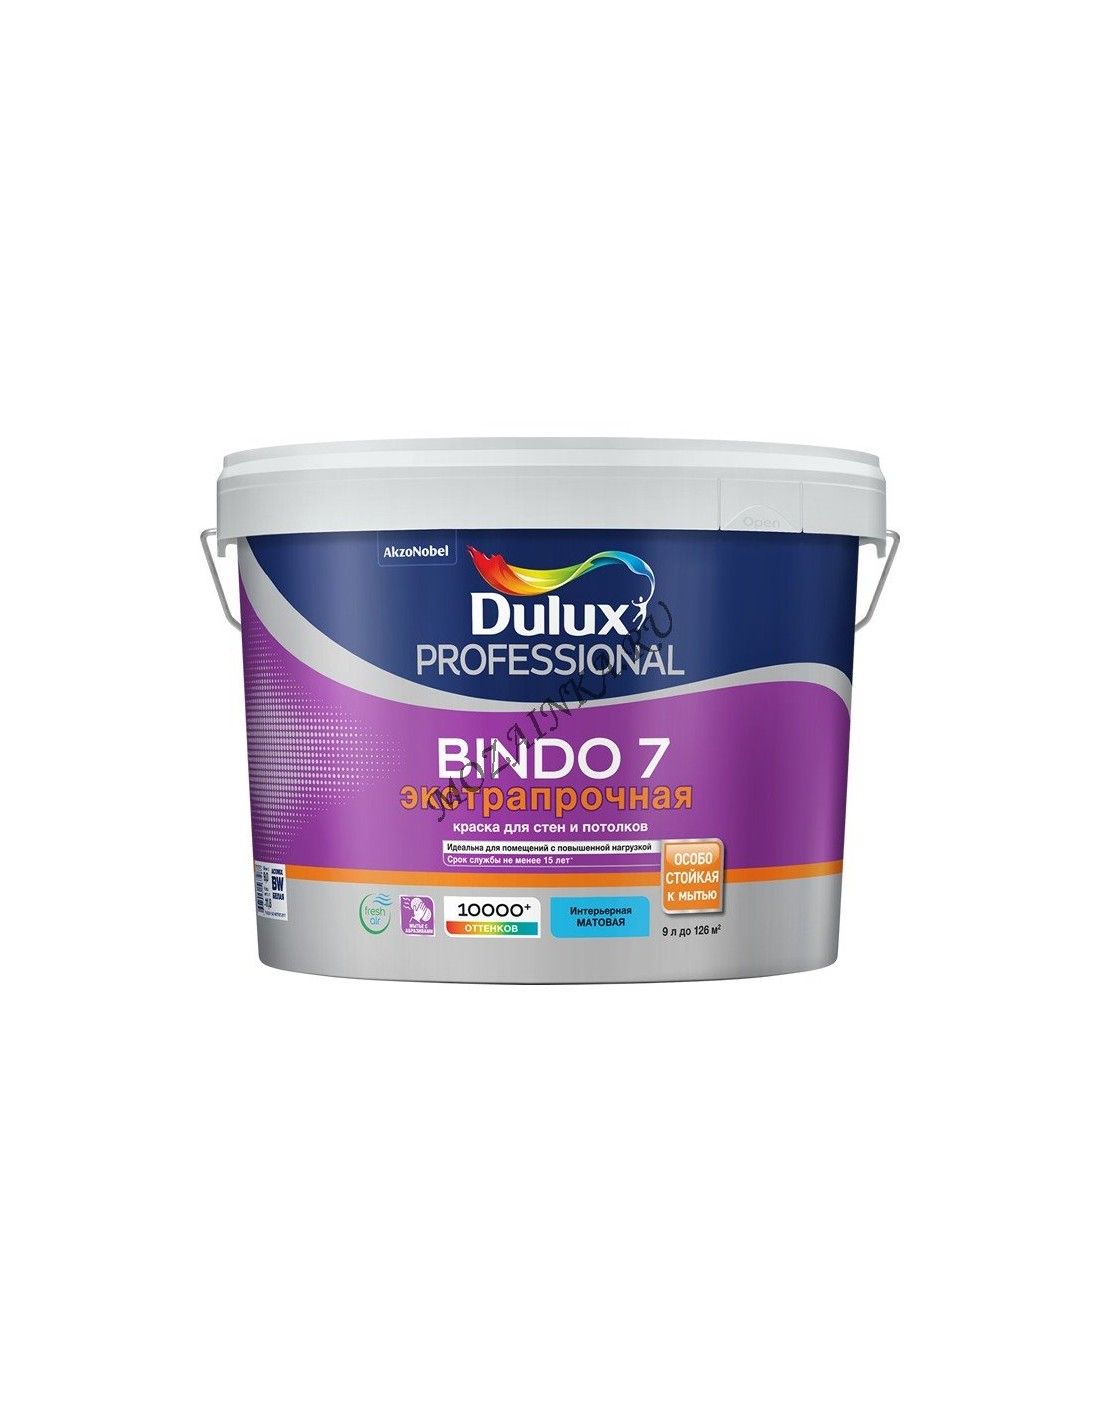 DULUX BINDO 7 краска для стен и потолков, износостойкая, матовая, белая .